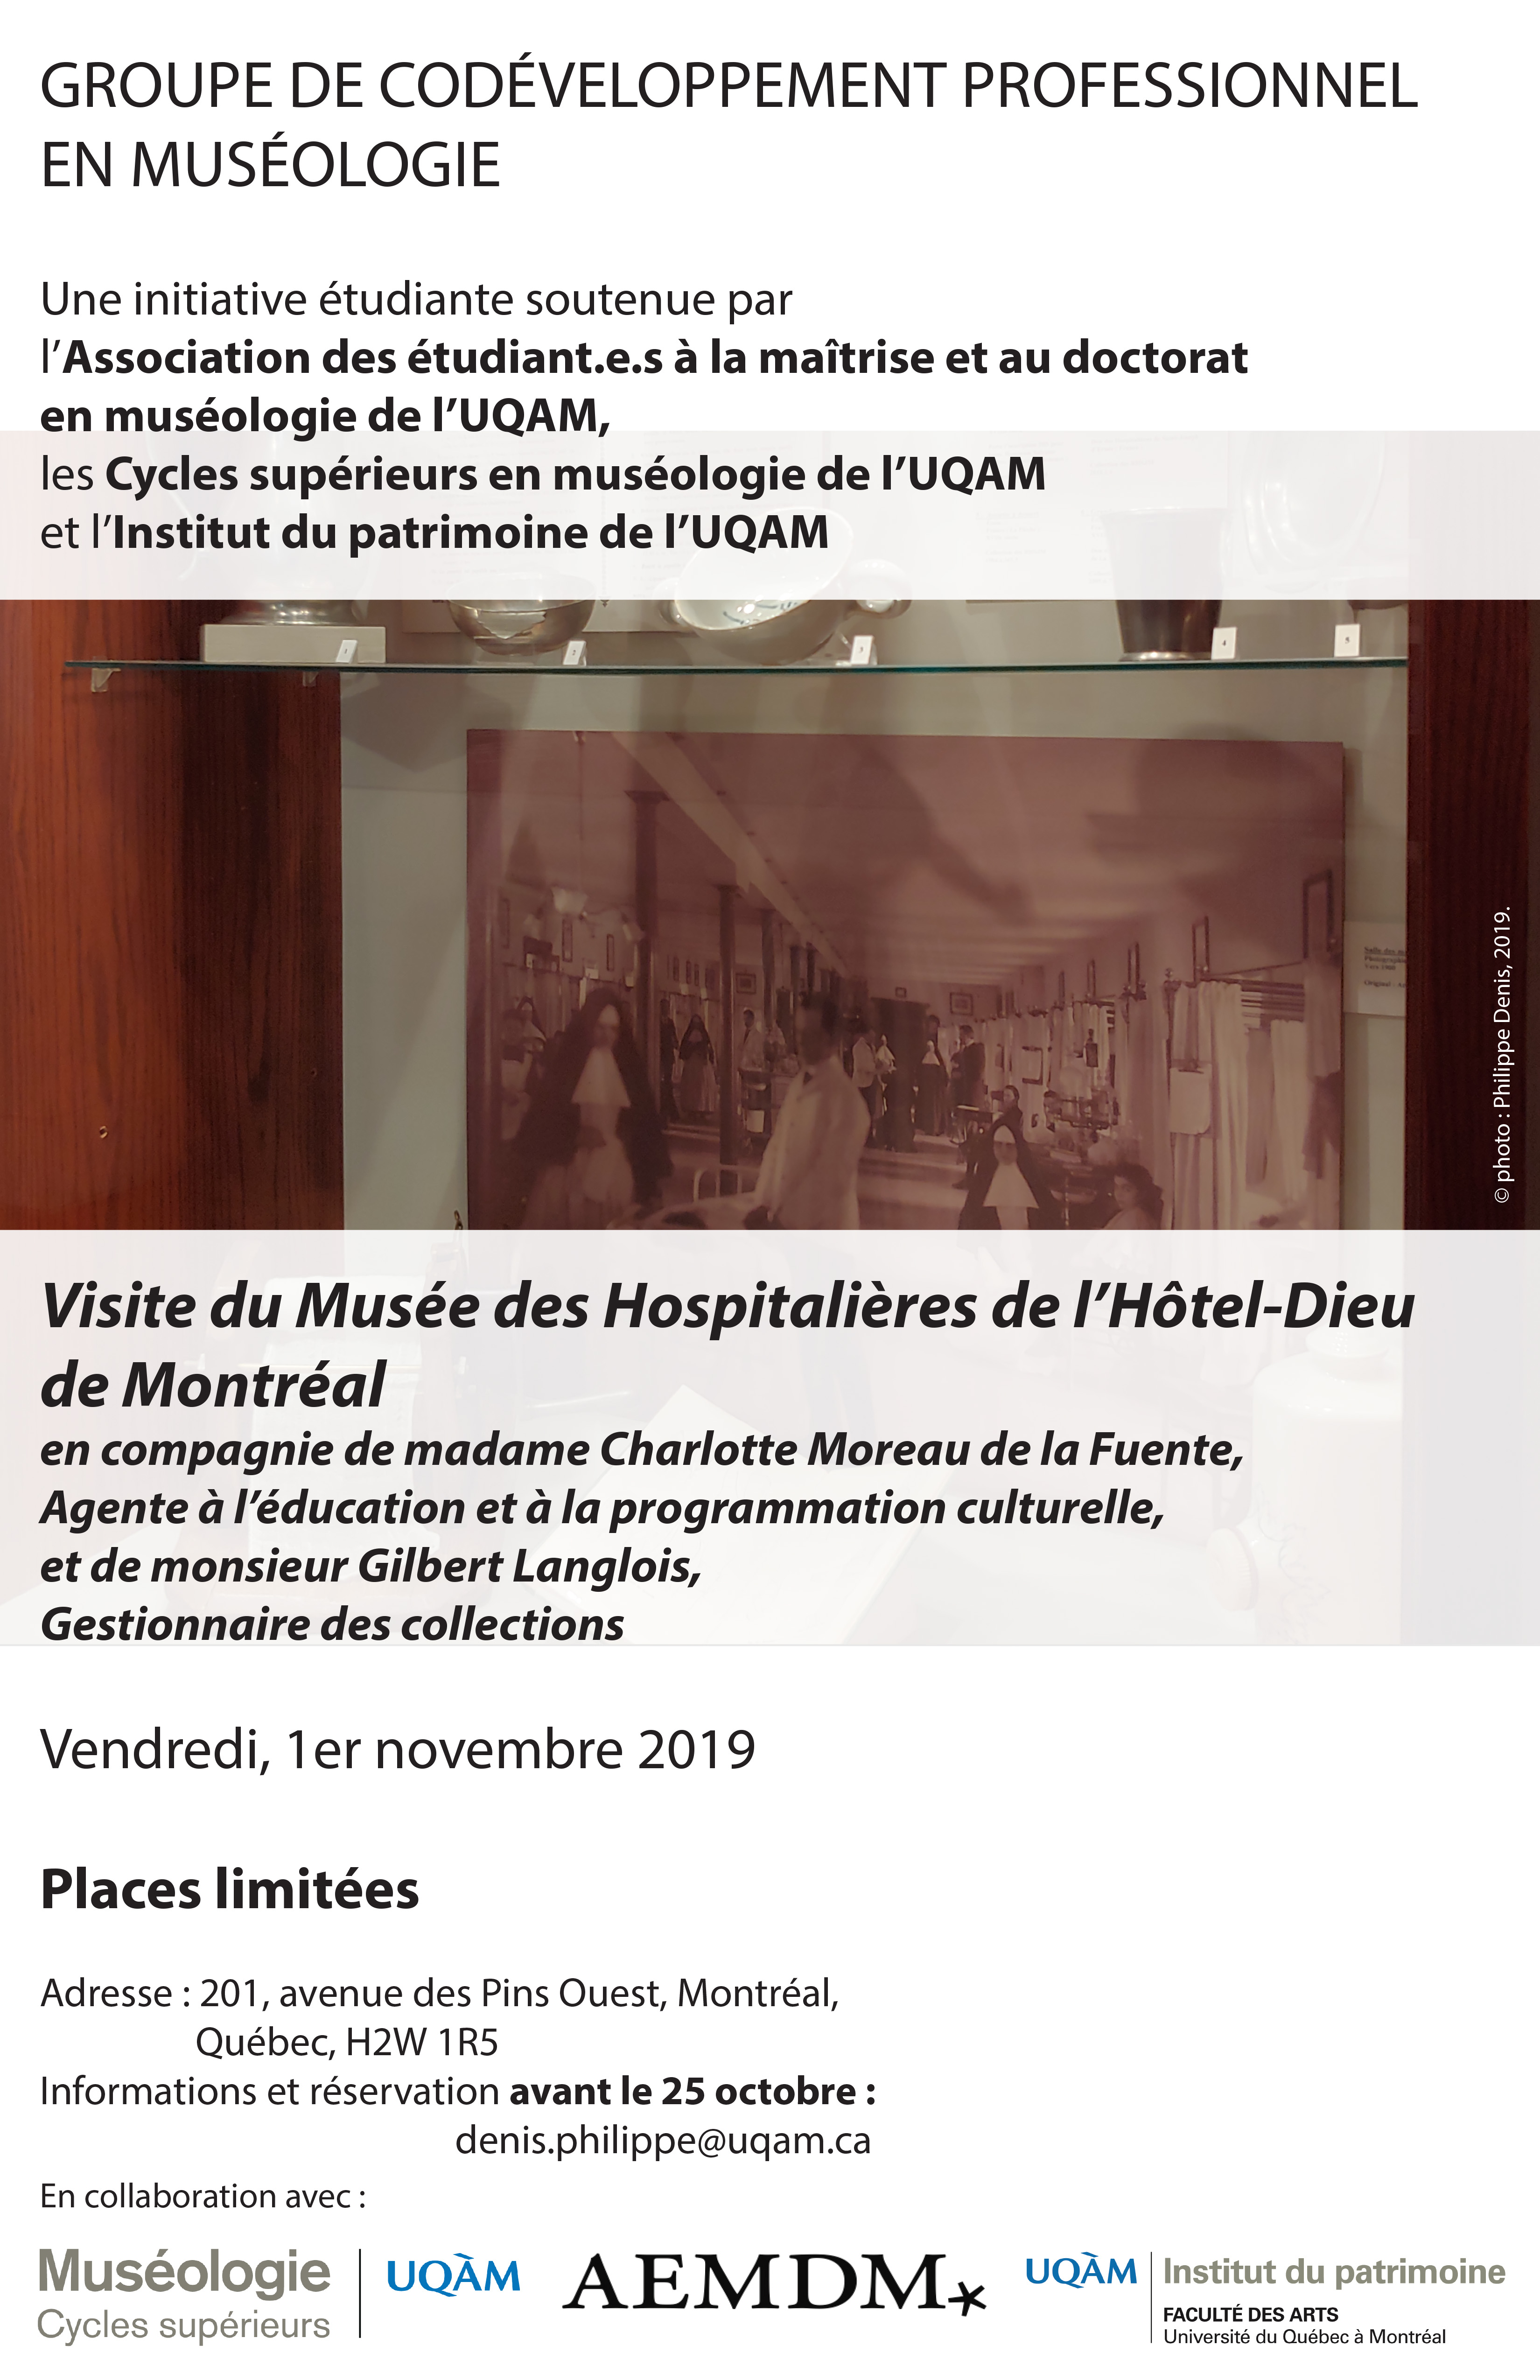 Groupe de codéveloppement professionnel en muséologie / Musée des Hospitalières de l’Hôtel-Dieu de Montréal